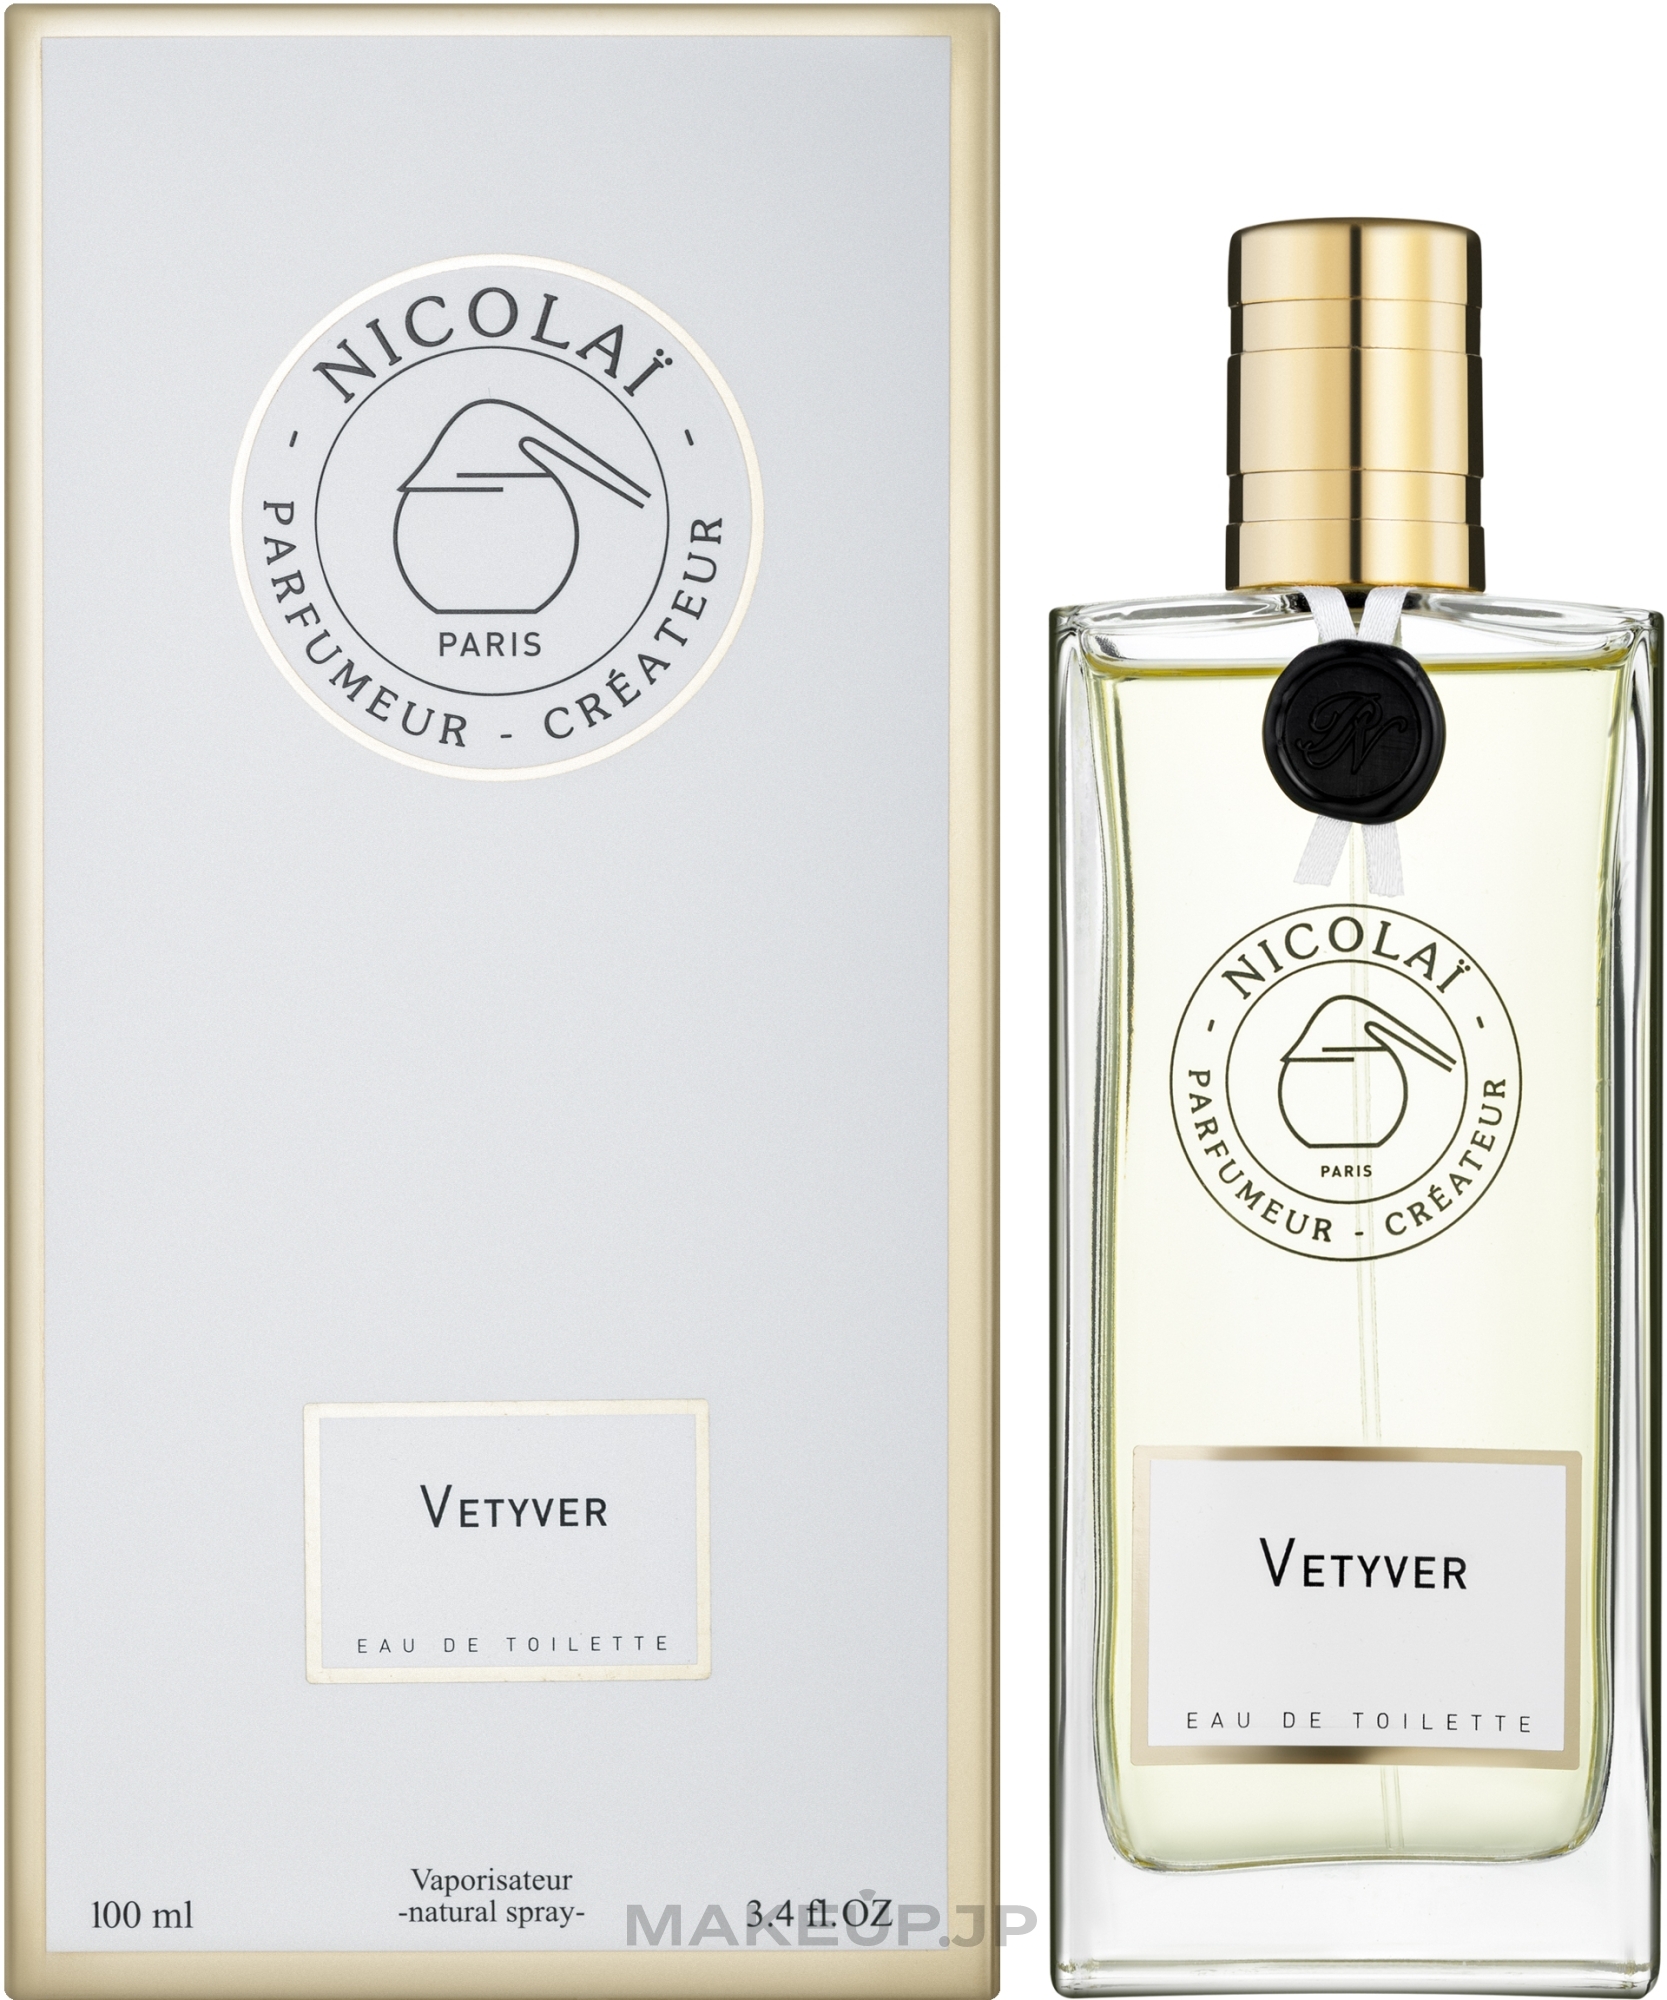 Nicolai Parfumeur Createur Vetyver - Eau de Toilette — photo 100 ml